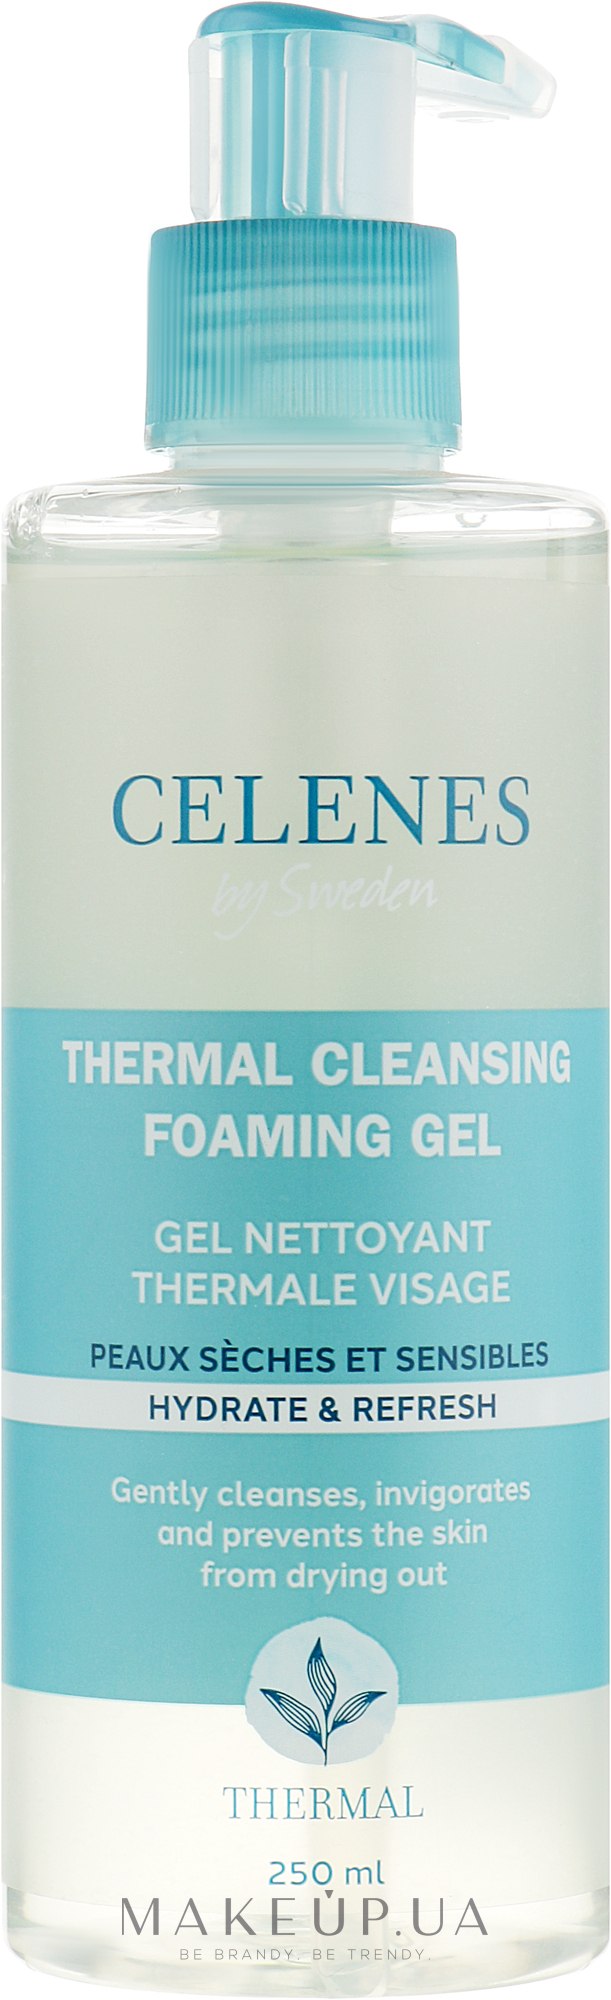 Термальная гель-пенка для сухой и чувствительной кожи - Celenes Thermal Cleansing Gel Dry and Sensitive Skin — фото 250ml